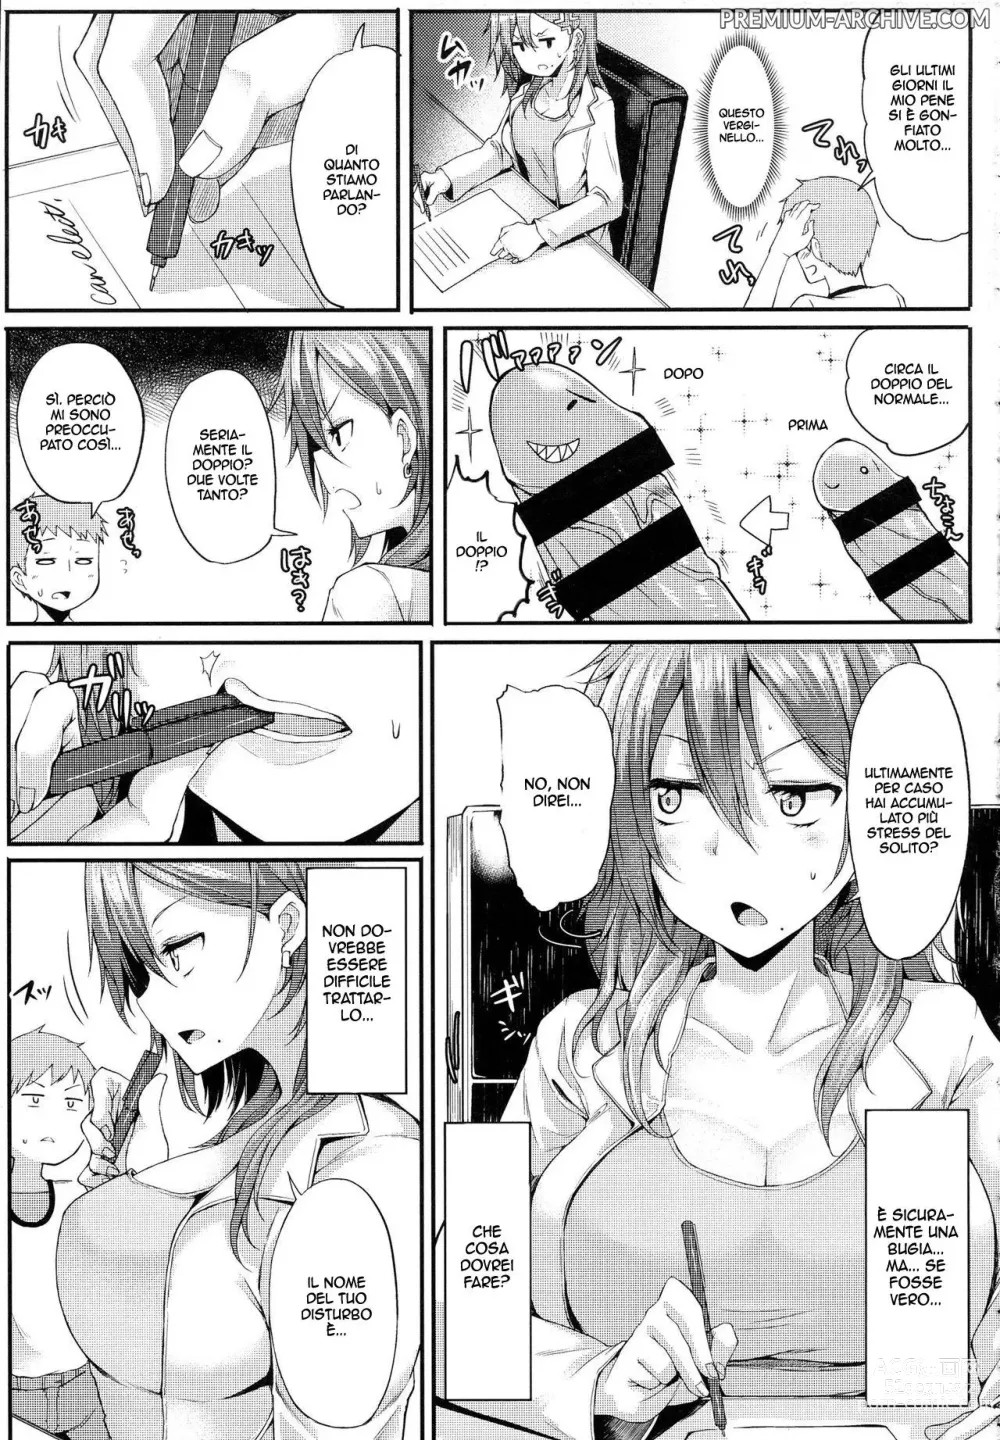 Page 3 of manga Goditela!